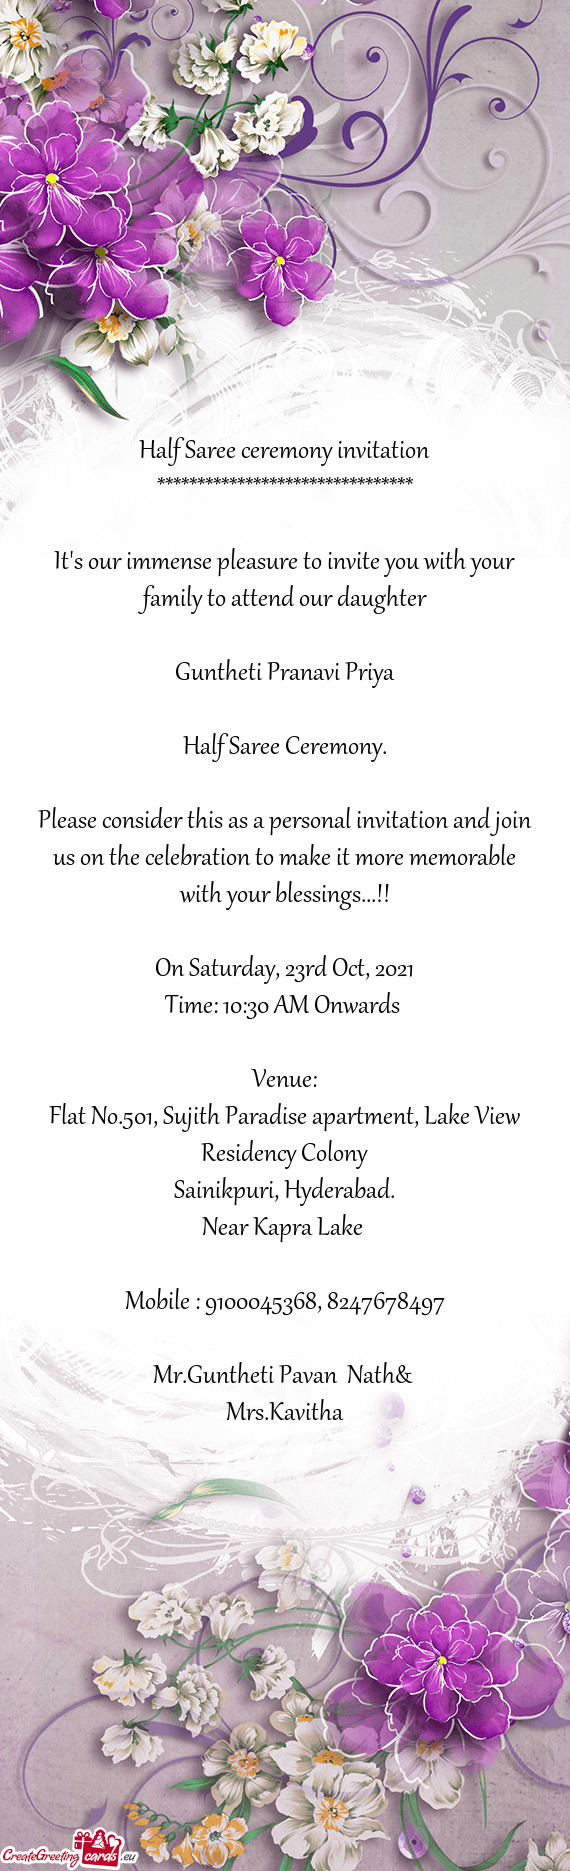 Guntheti Pranavi Priya